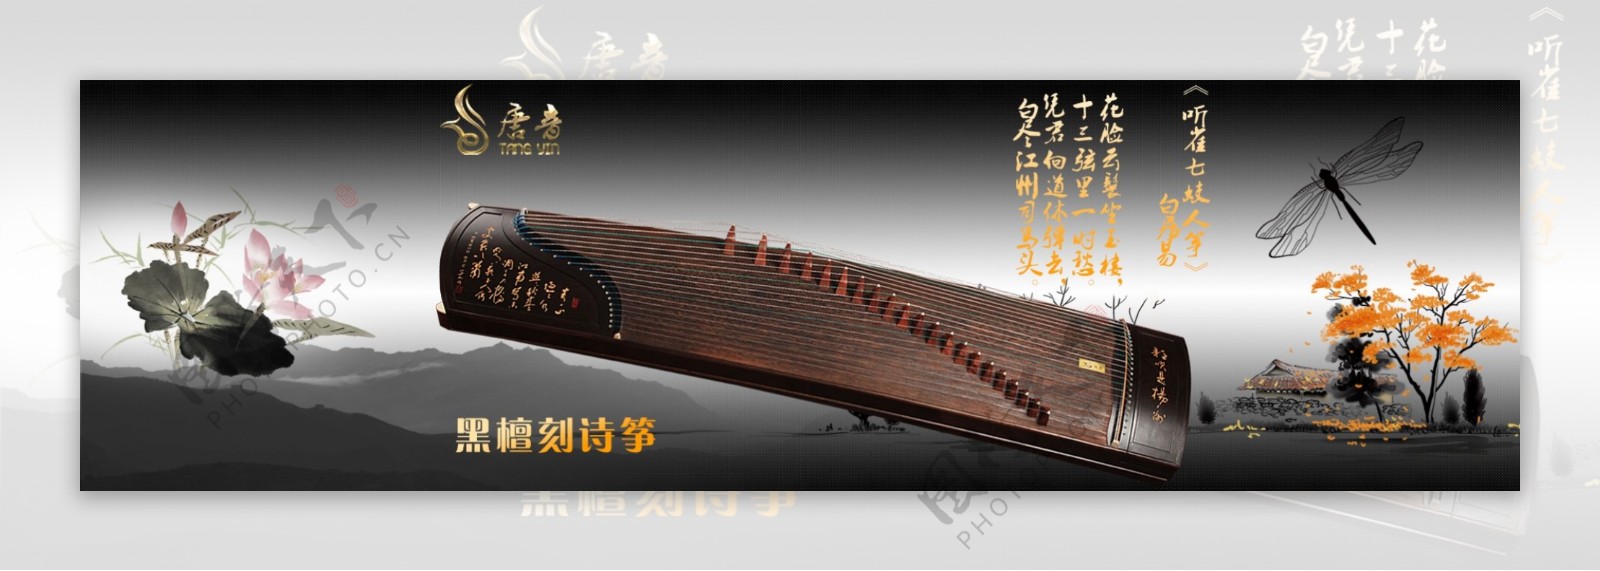 中国风琴广告